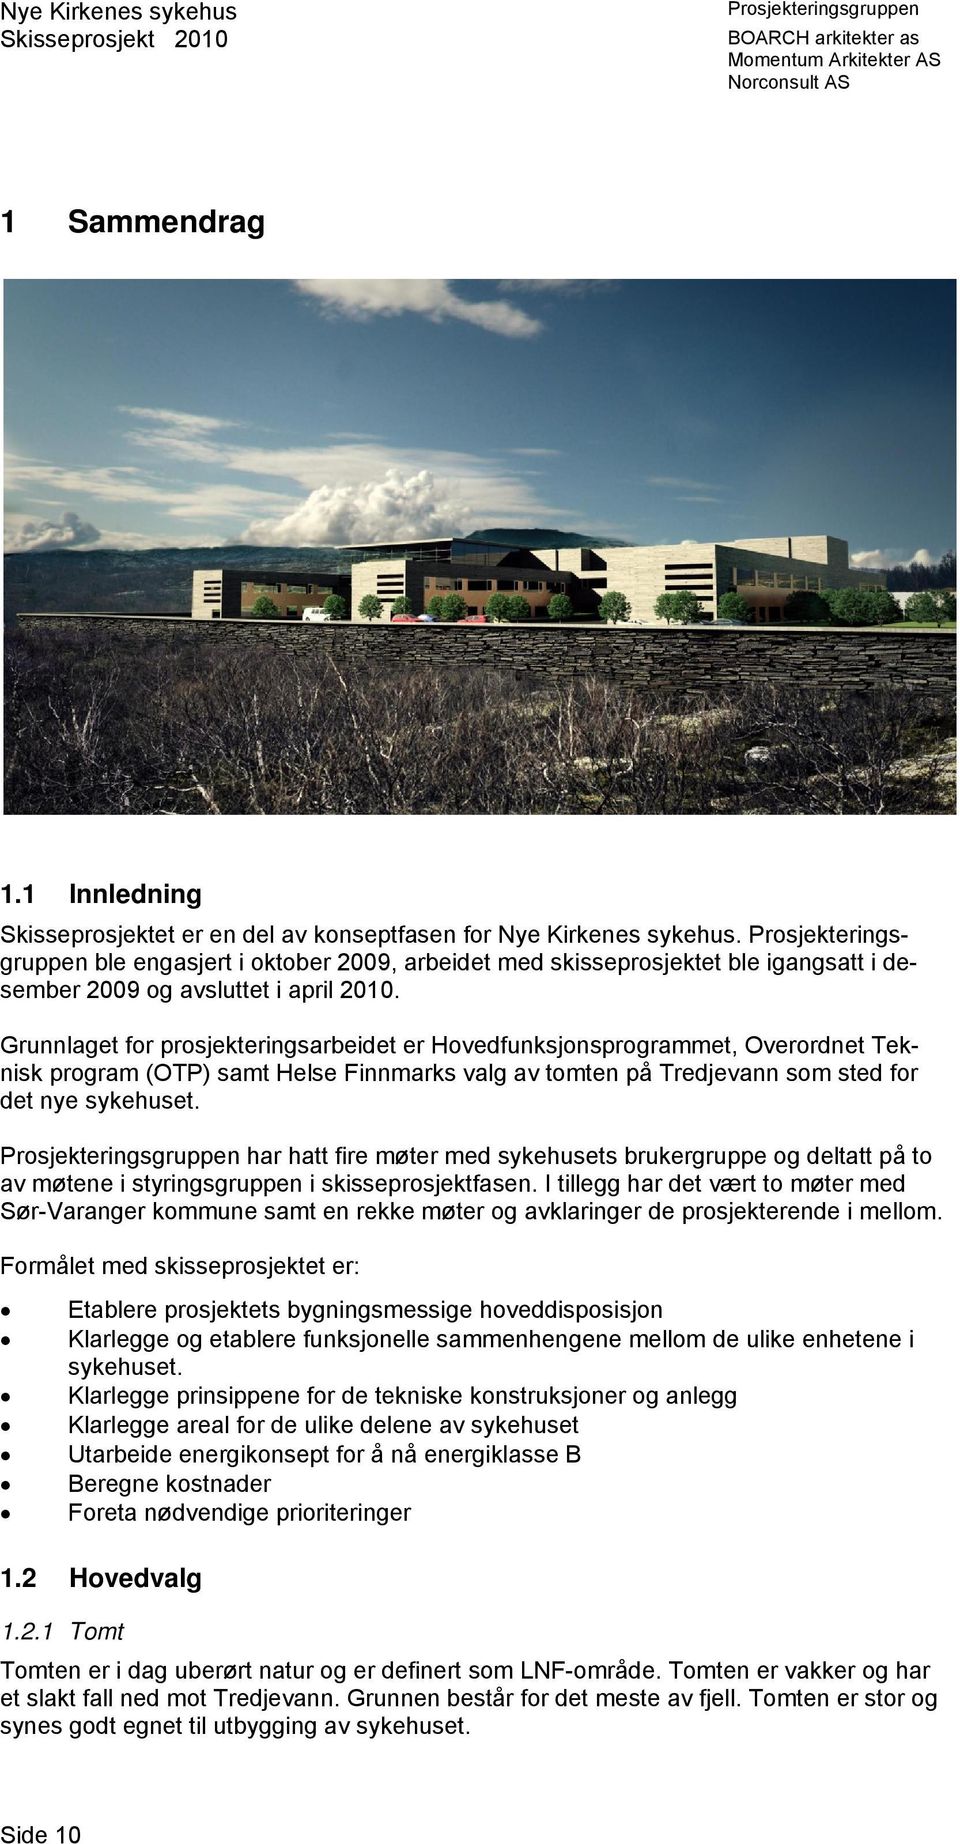 Grunnlaget for prosjekteringsarbeidet er Hovedfunksjonsprogrammet, Overordnet Teknisk program (OTP) samt Helse Finnmarks valg av tomten på Tredjevann som sted for det nye sykehuset.